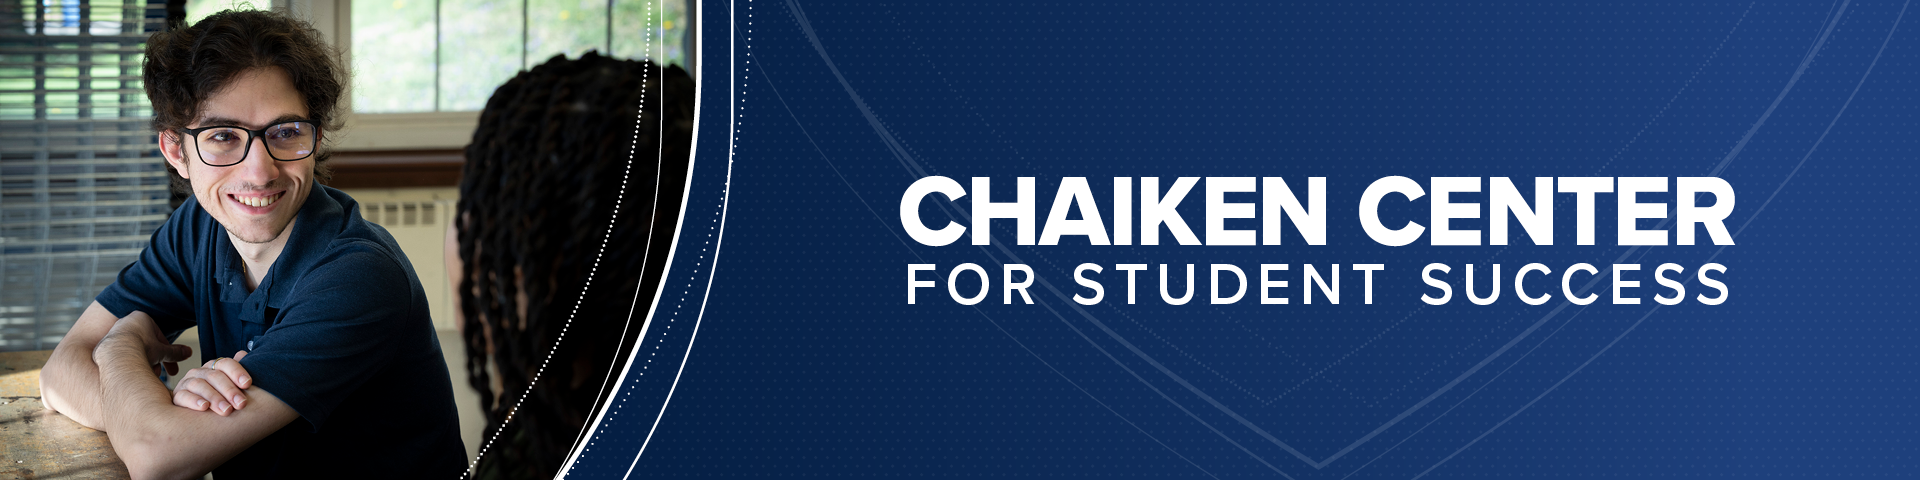 Chaiken Center banner, student smiling